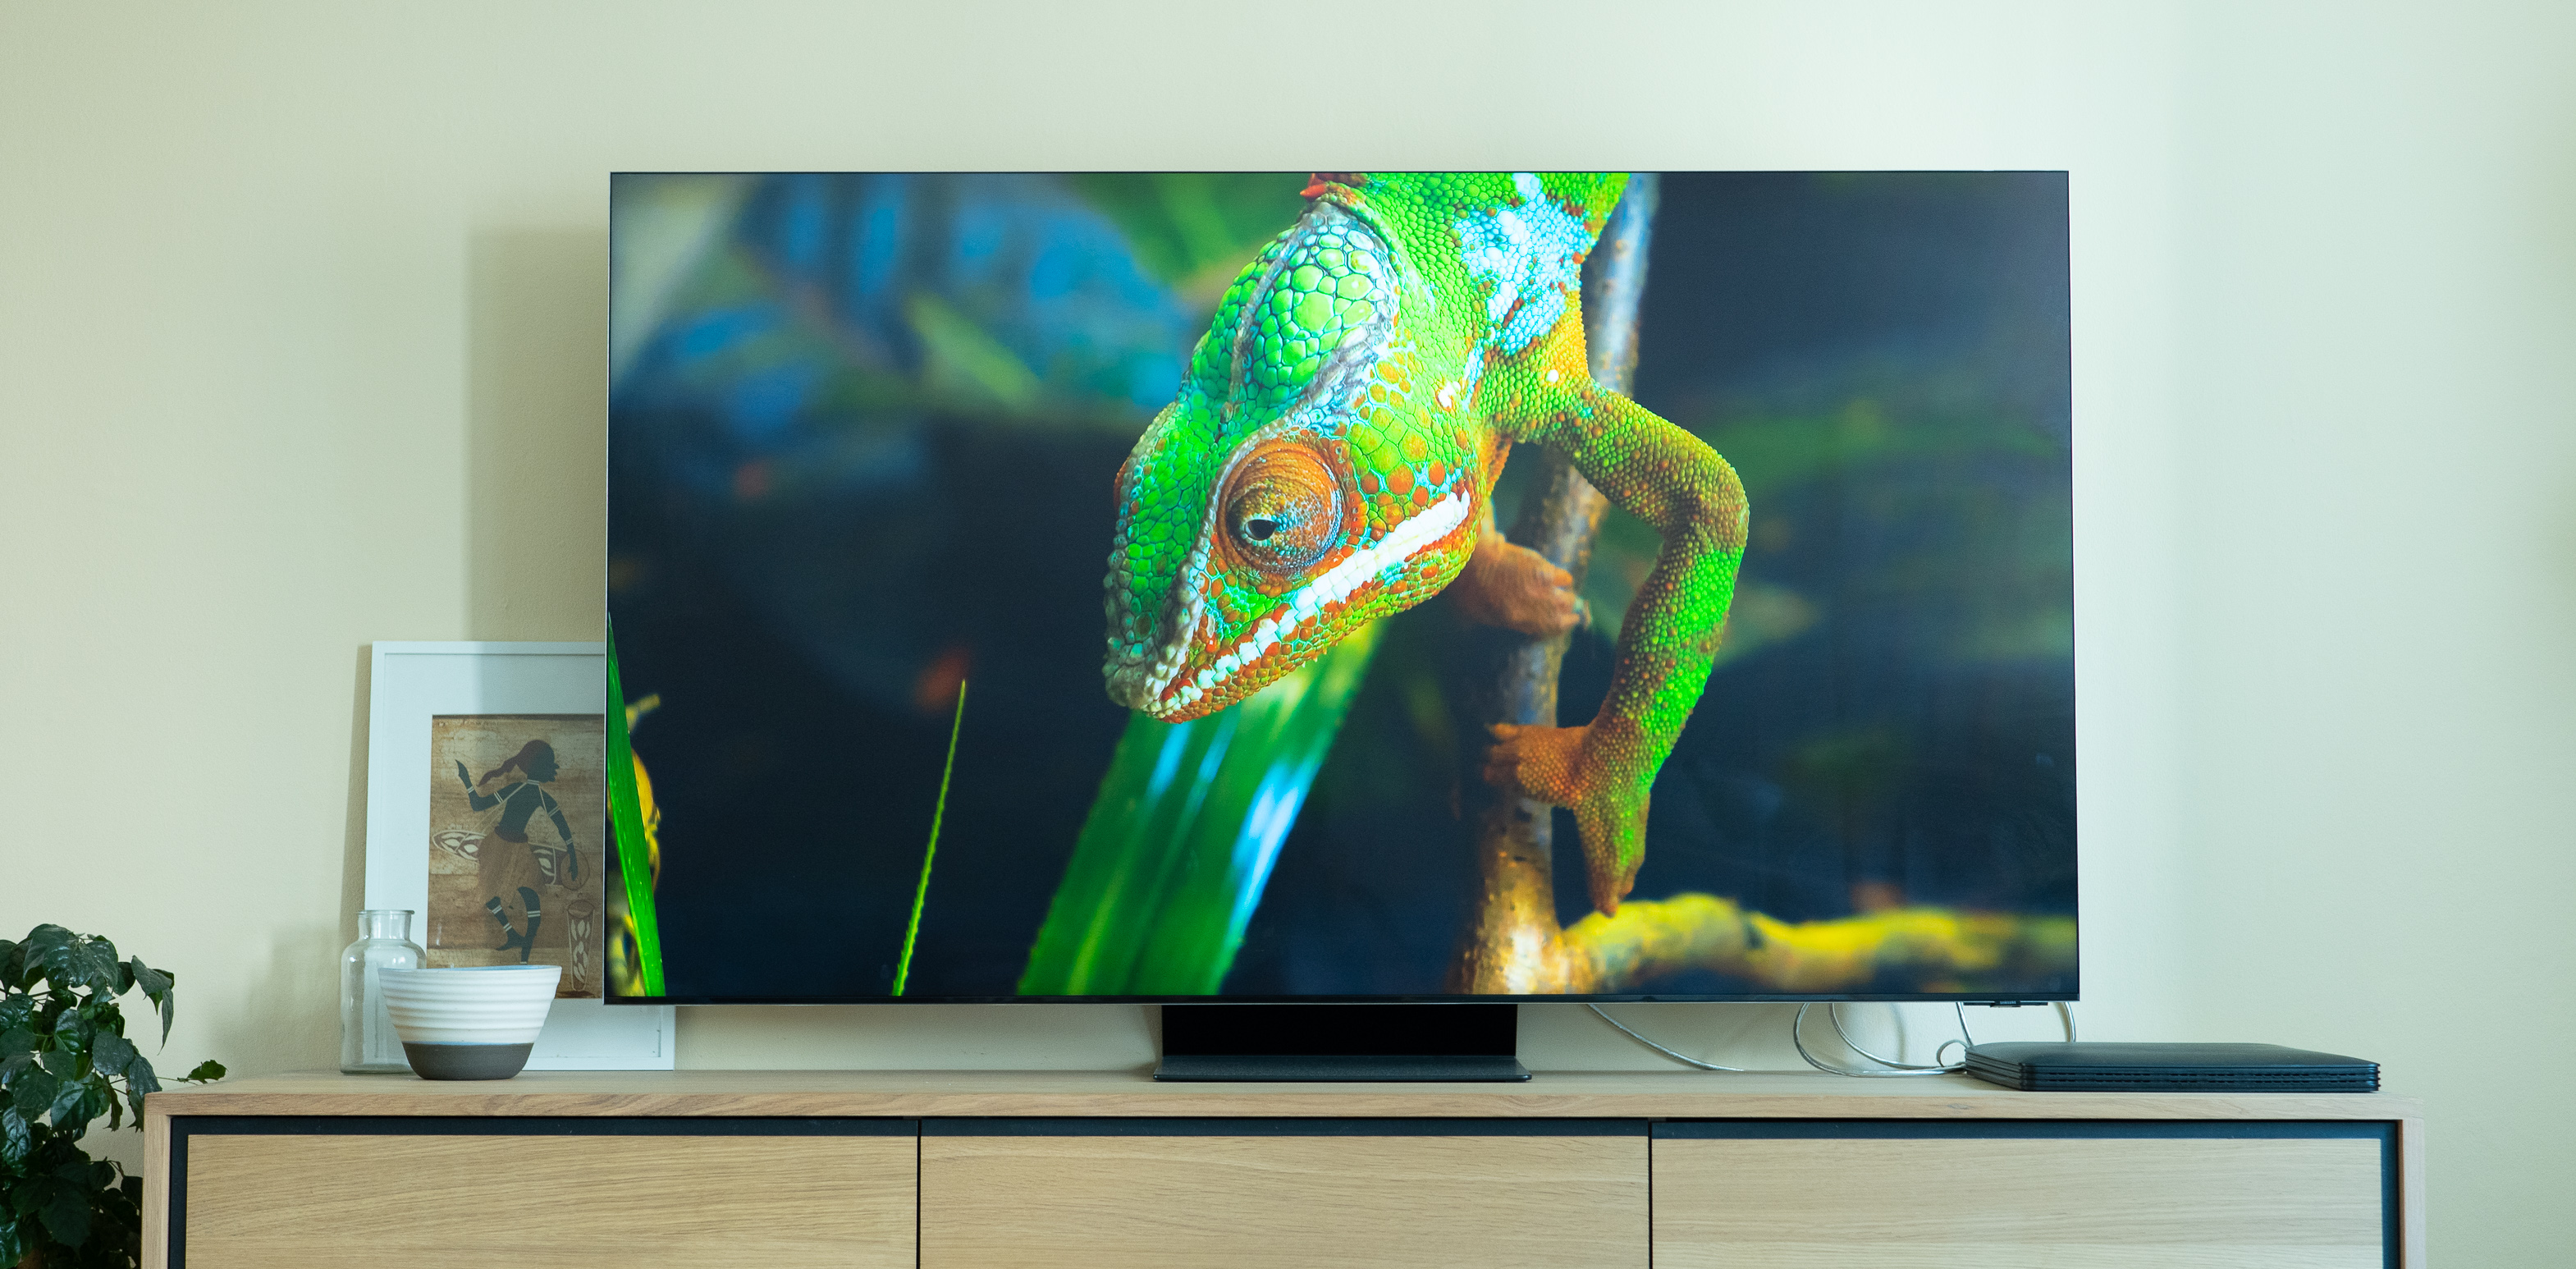 Test af Samsungs 8K drømme-tv: Hvad får man egentlig, når man køber et  fjernsyn til 44.000 kroner? - Computerworld